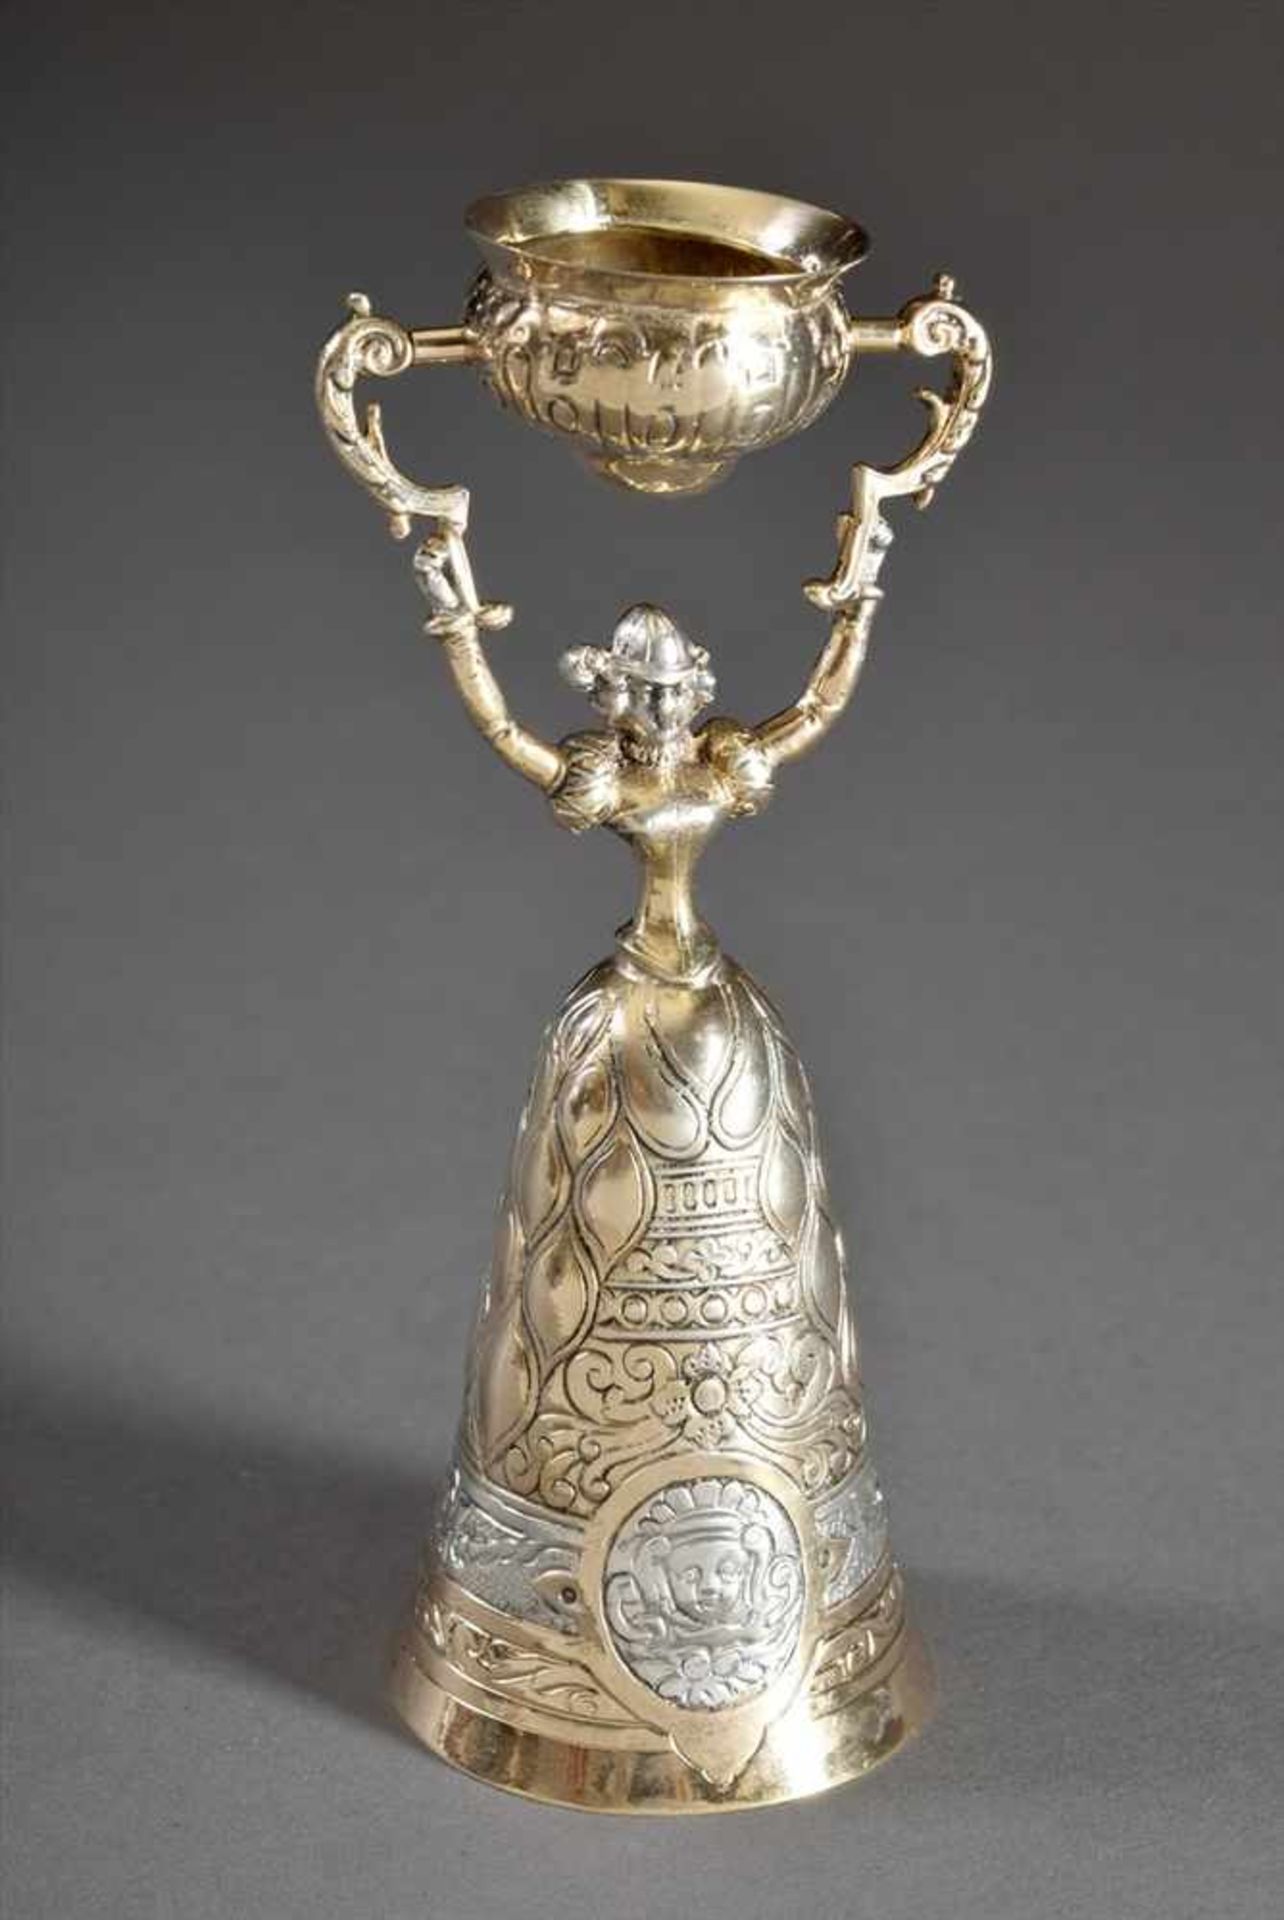 Hochzeits-Scherzbecher nach antikem Vorbild, Ludwig Neresheimer, Silber 800 vergoldet, 87g, H. 12,